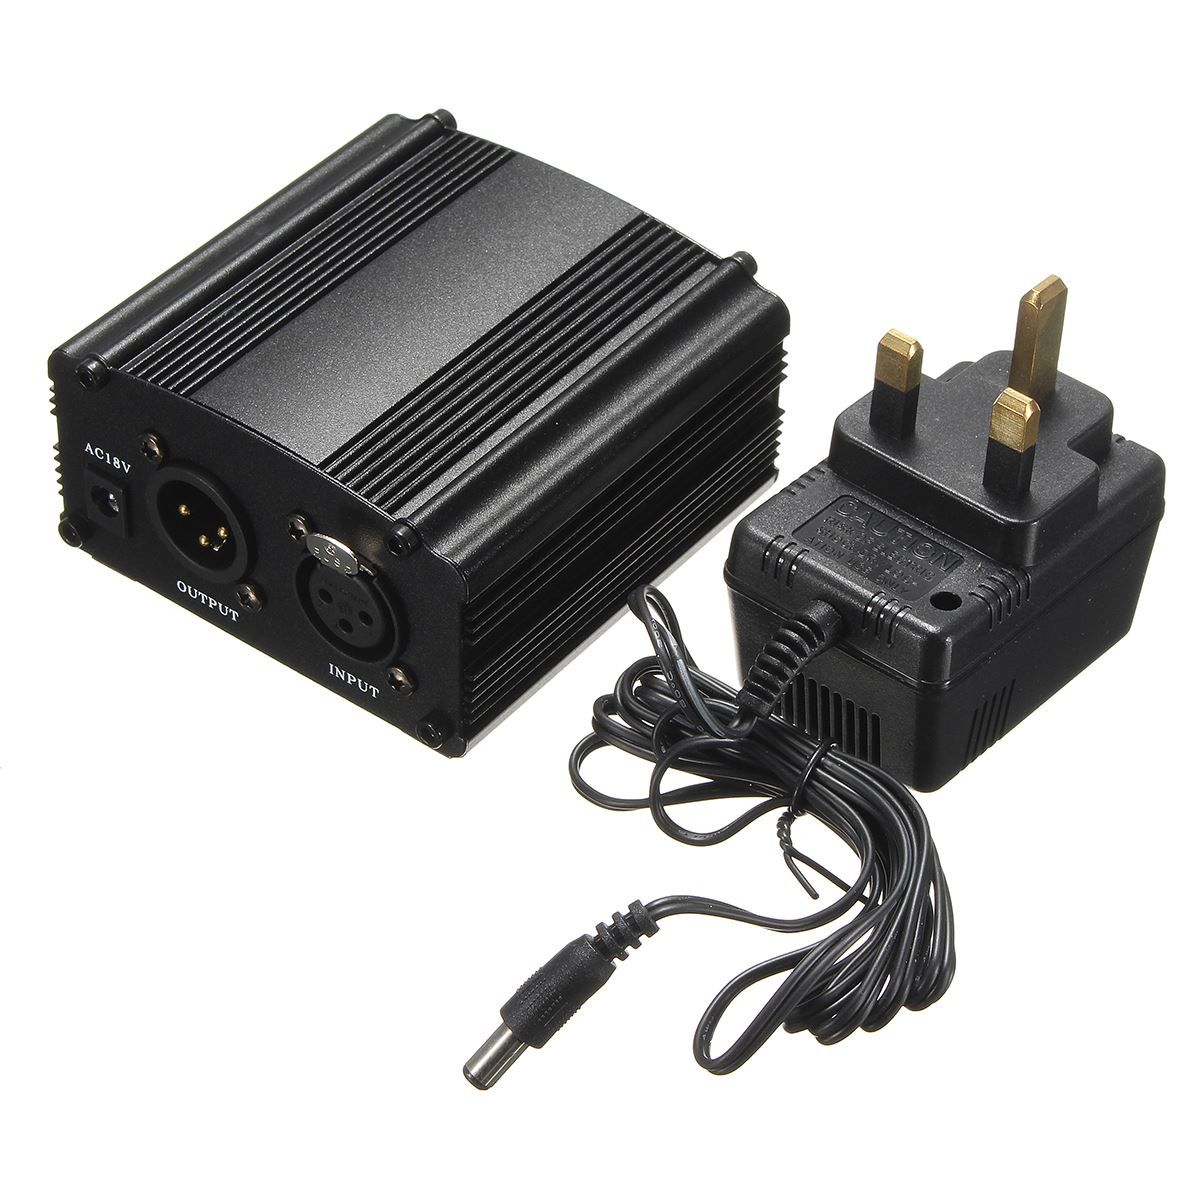 BM-800-NB-35-Capacitor-Condenser-Microphone-48V-Phantom-Power--USB-Sound-Card-for-PC-Recording-Live--1701790